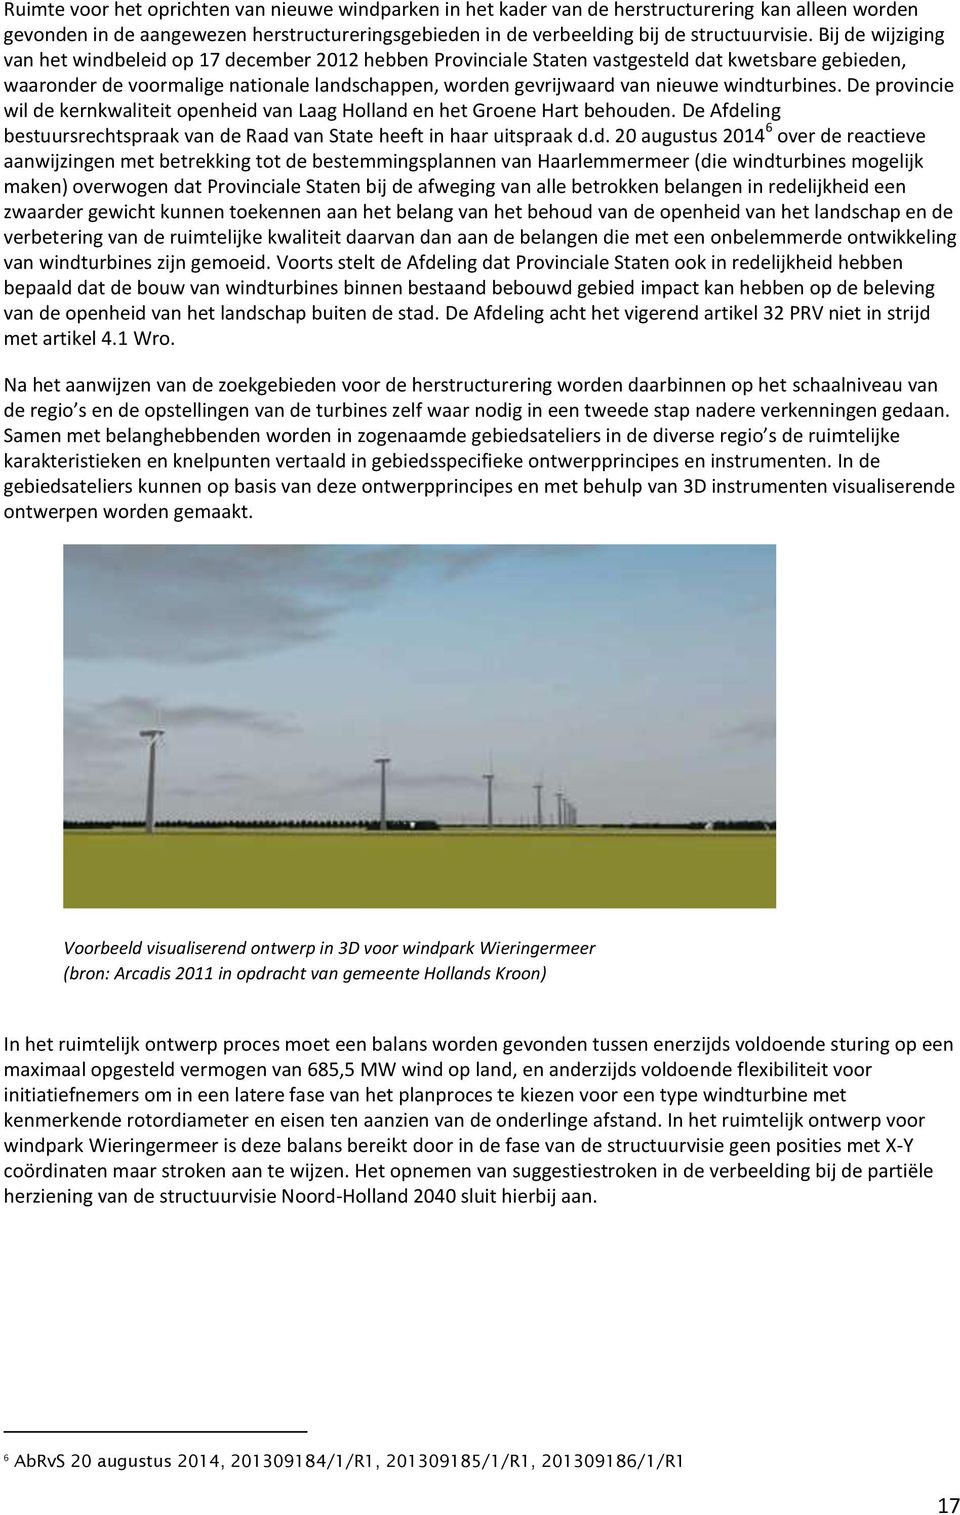 windturbines. De provincie wil de kernkwaliteit openheid van Laag Holland en het Groene Hart behouden. De Afdeling bestuursrechtspraak van de Raad van State heeft in haar uitspraak d.d. 20 augustus